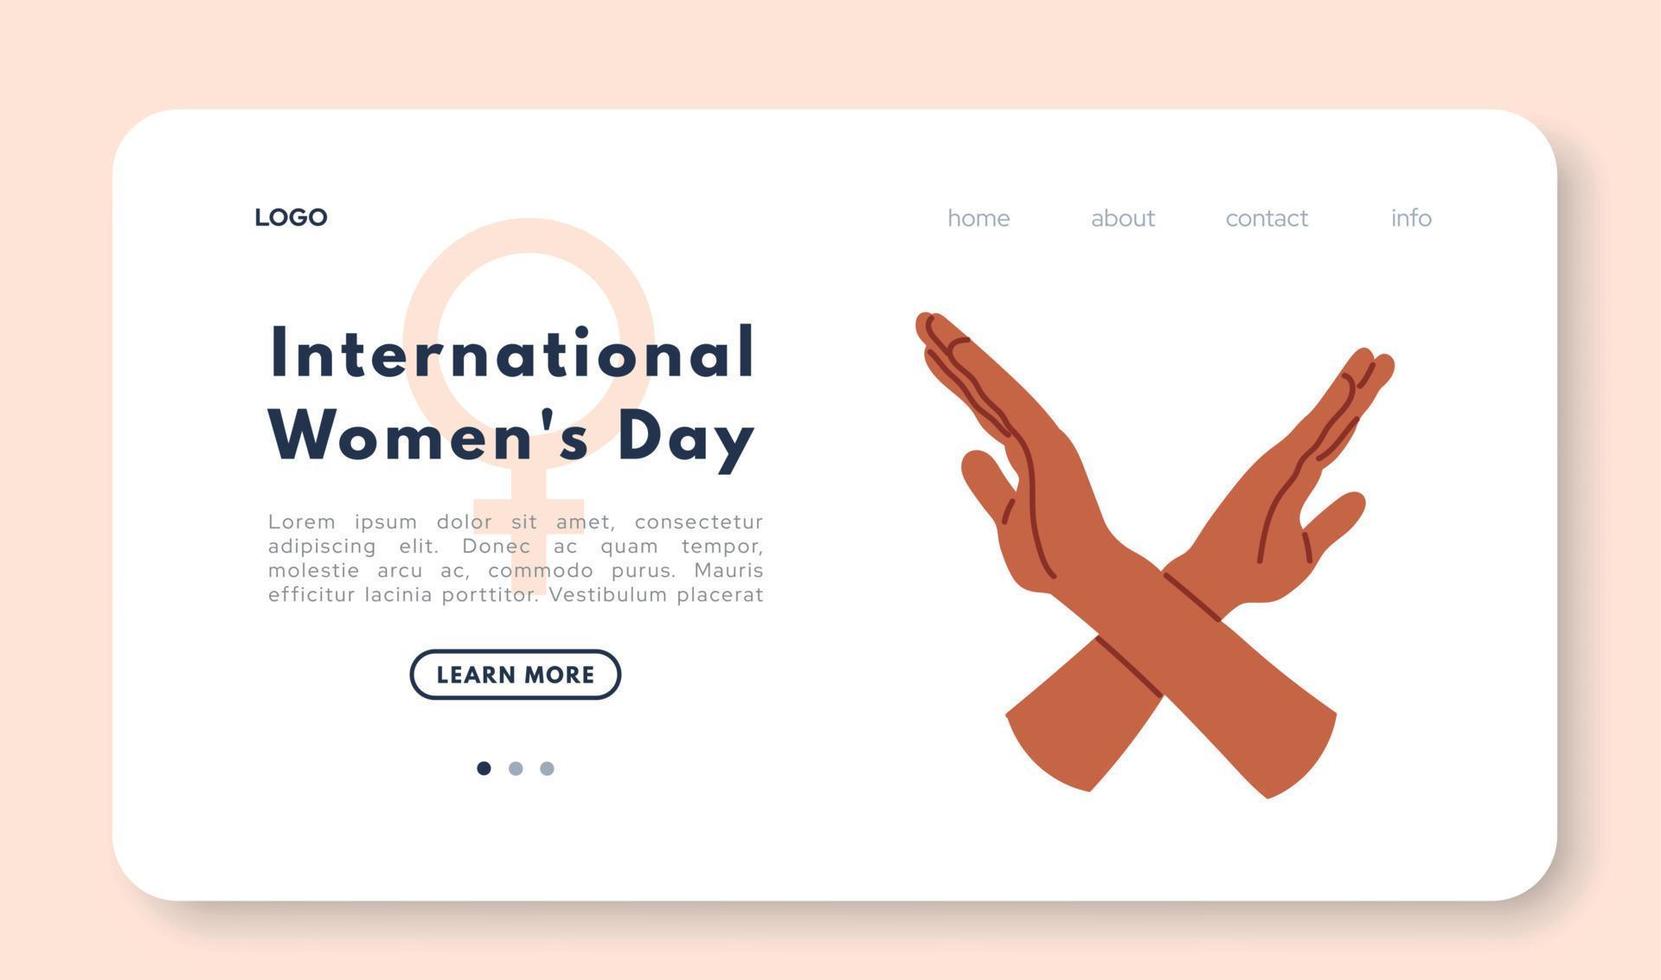 día internacional de la mujer. brazos cruzados para apoyar la igualdad de género. ilustración vectorial plana aislada sobre fondo blanco vector